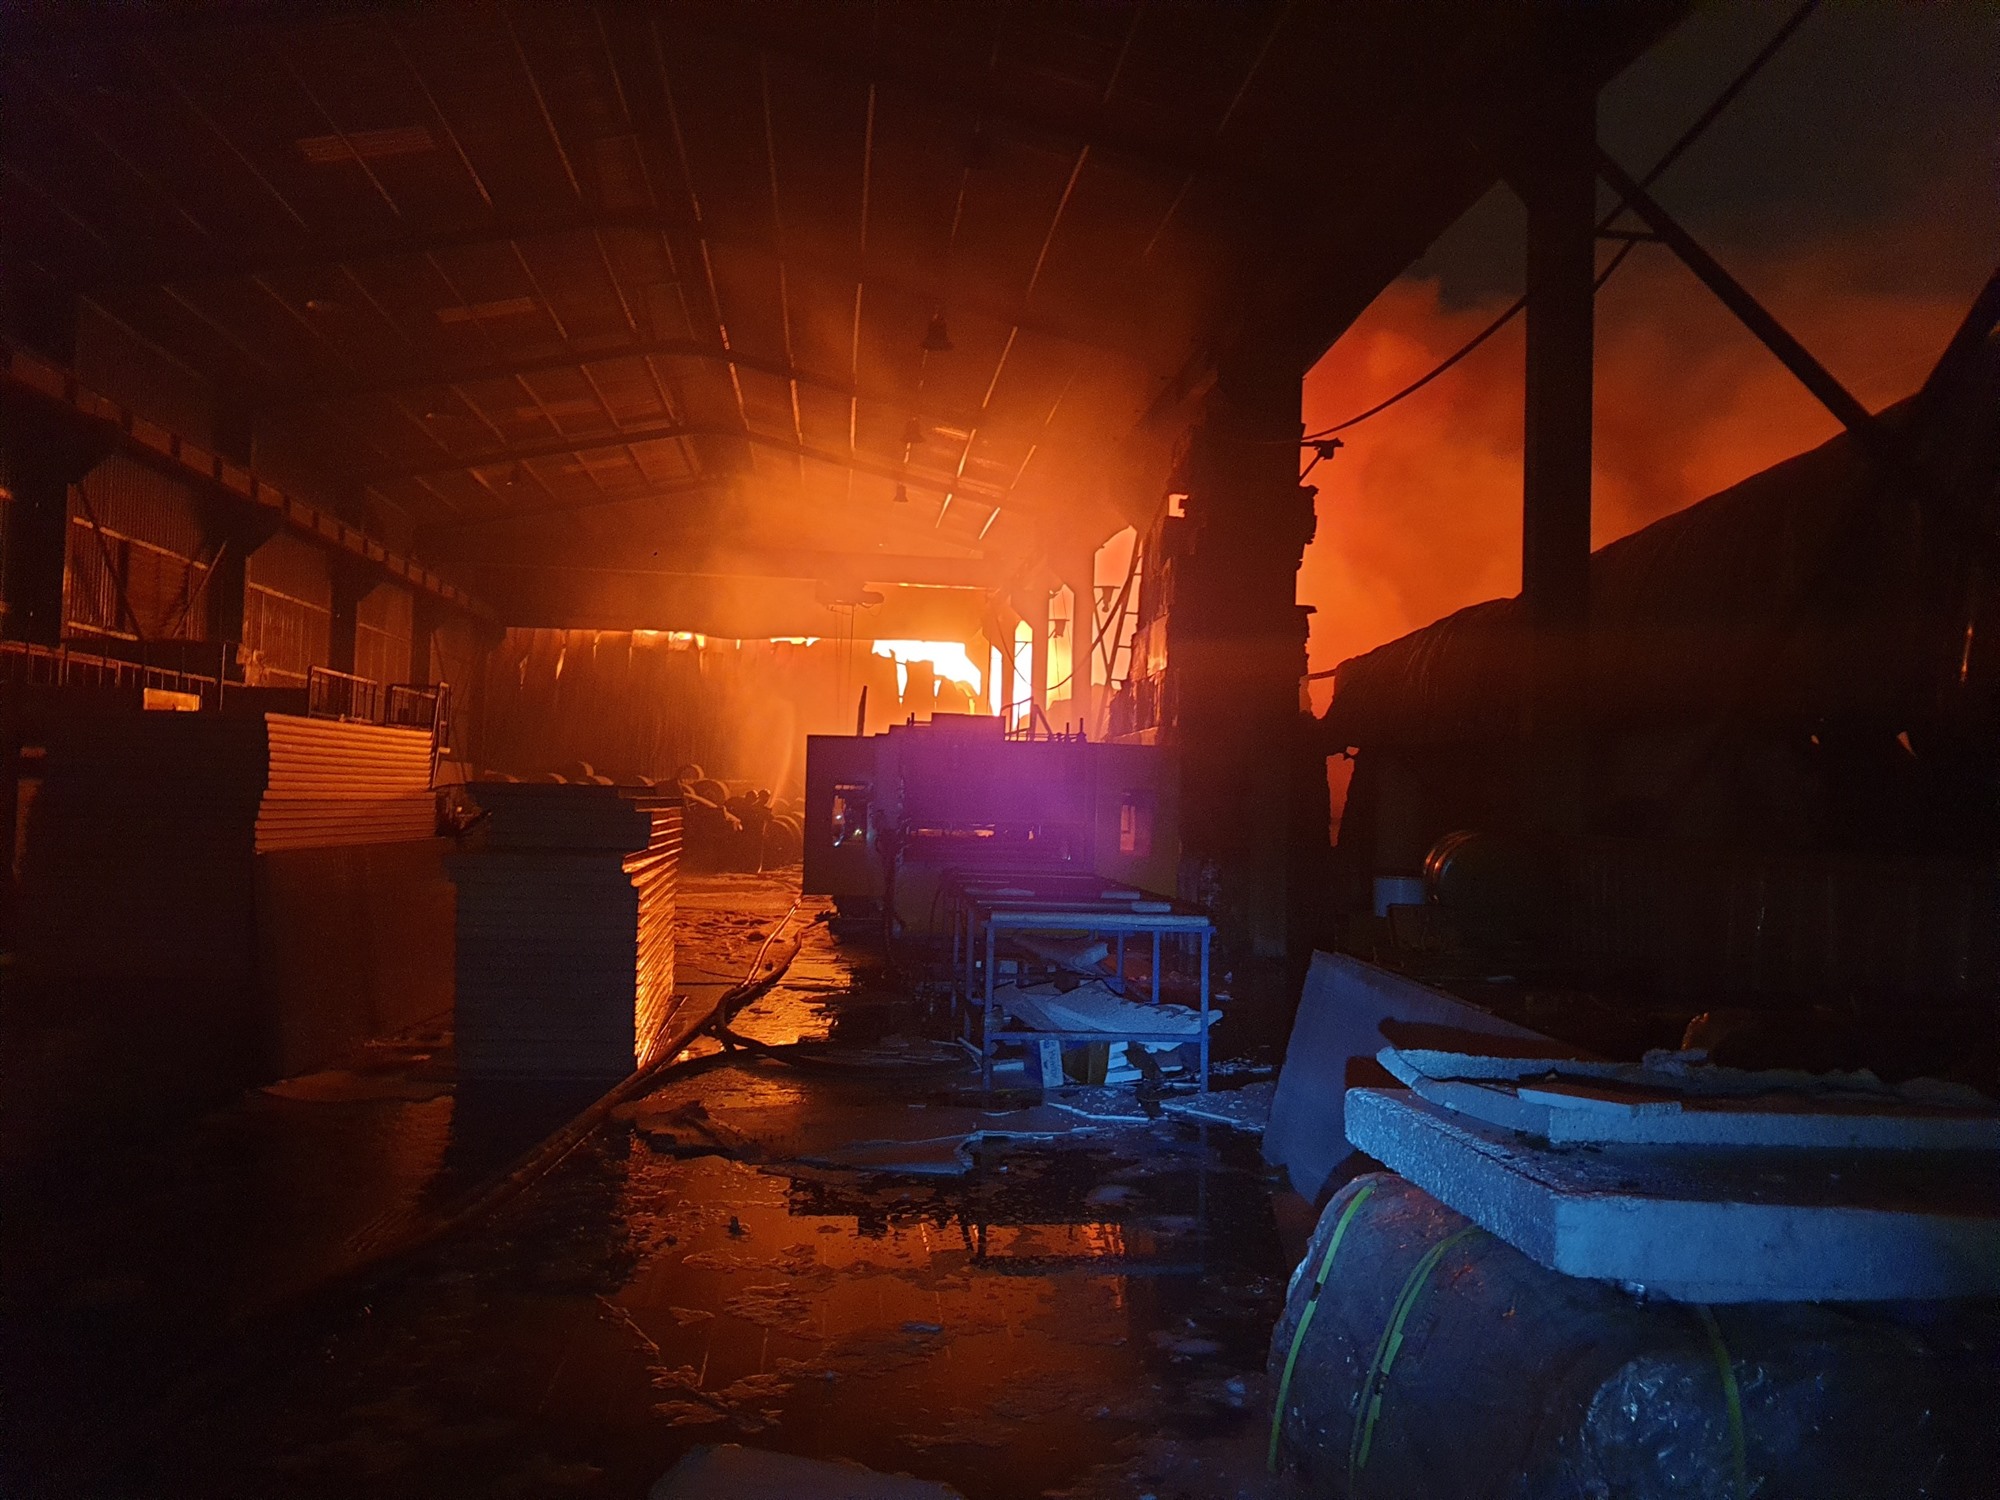  Vụ cháy bắt đầu từ một công ty lúc 17h20 cùng ngày, sau đó đã lan sang 2 cơ sở khác. 